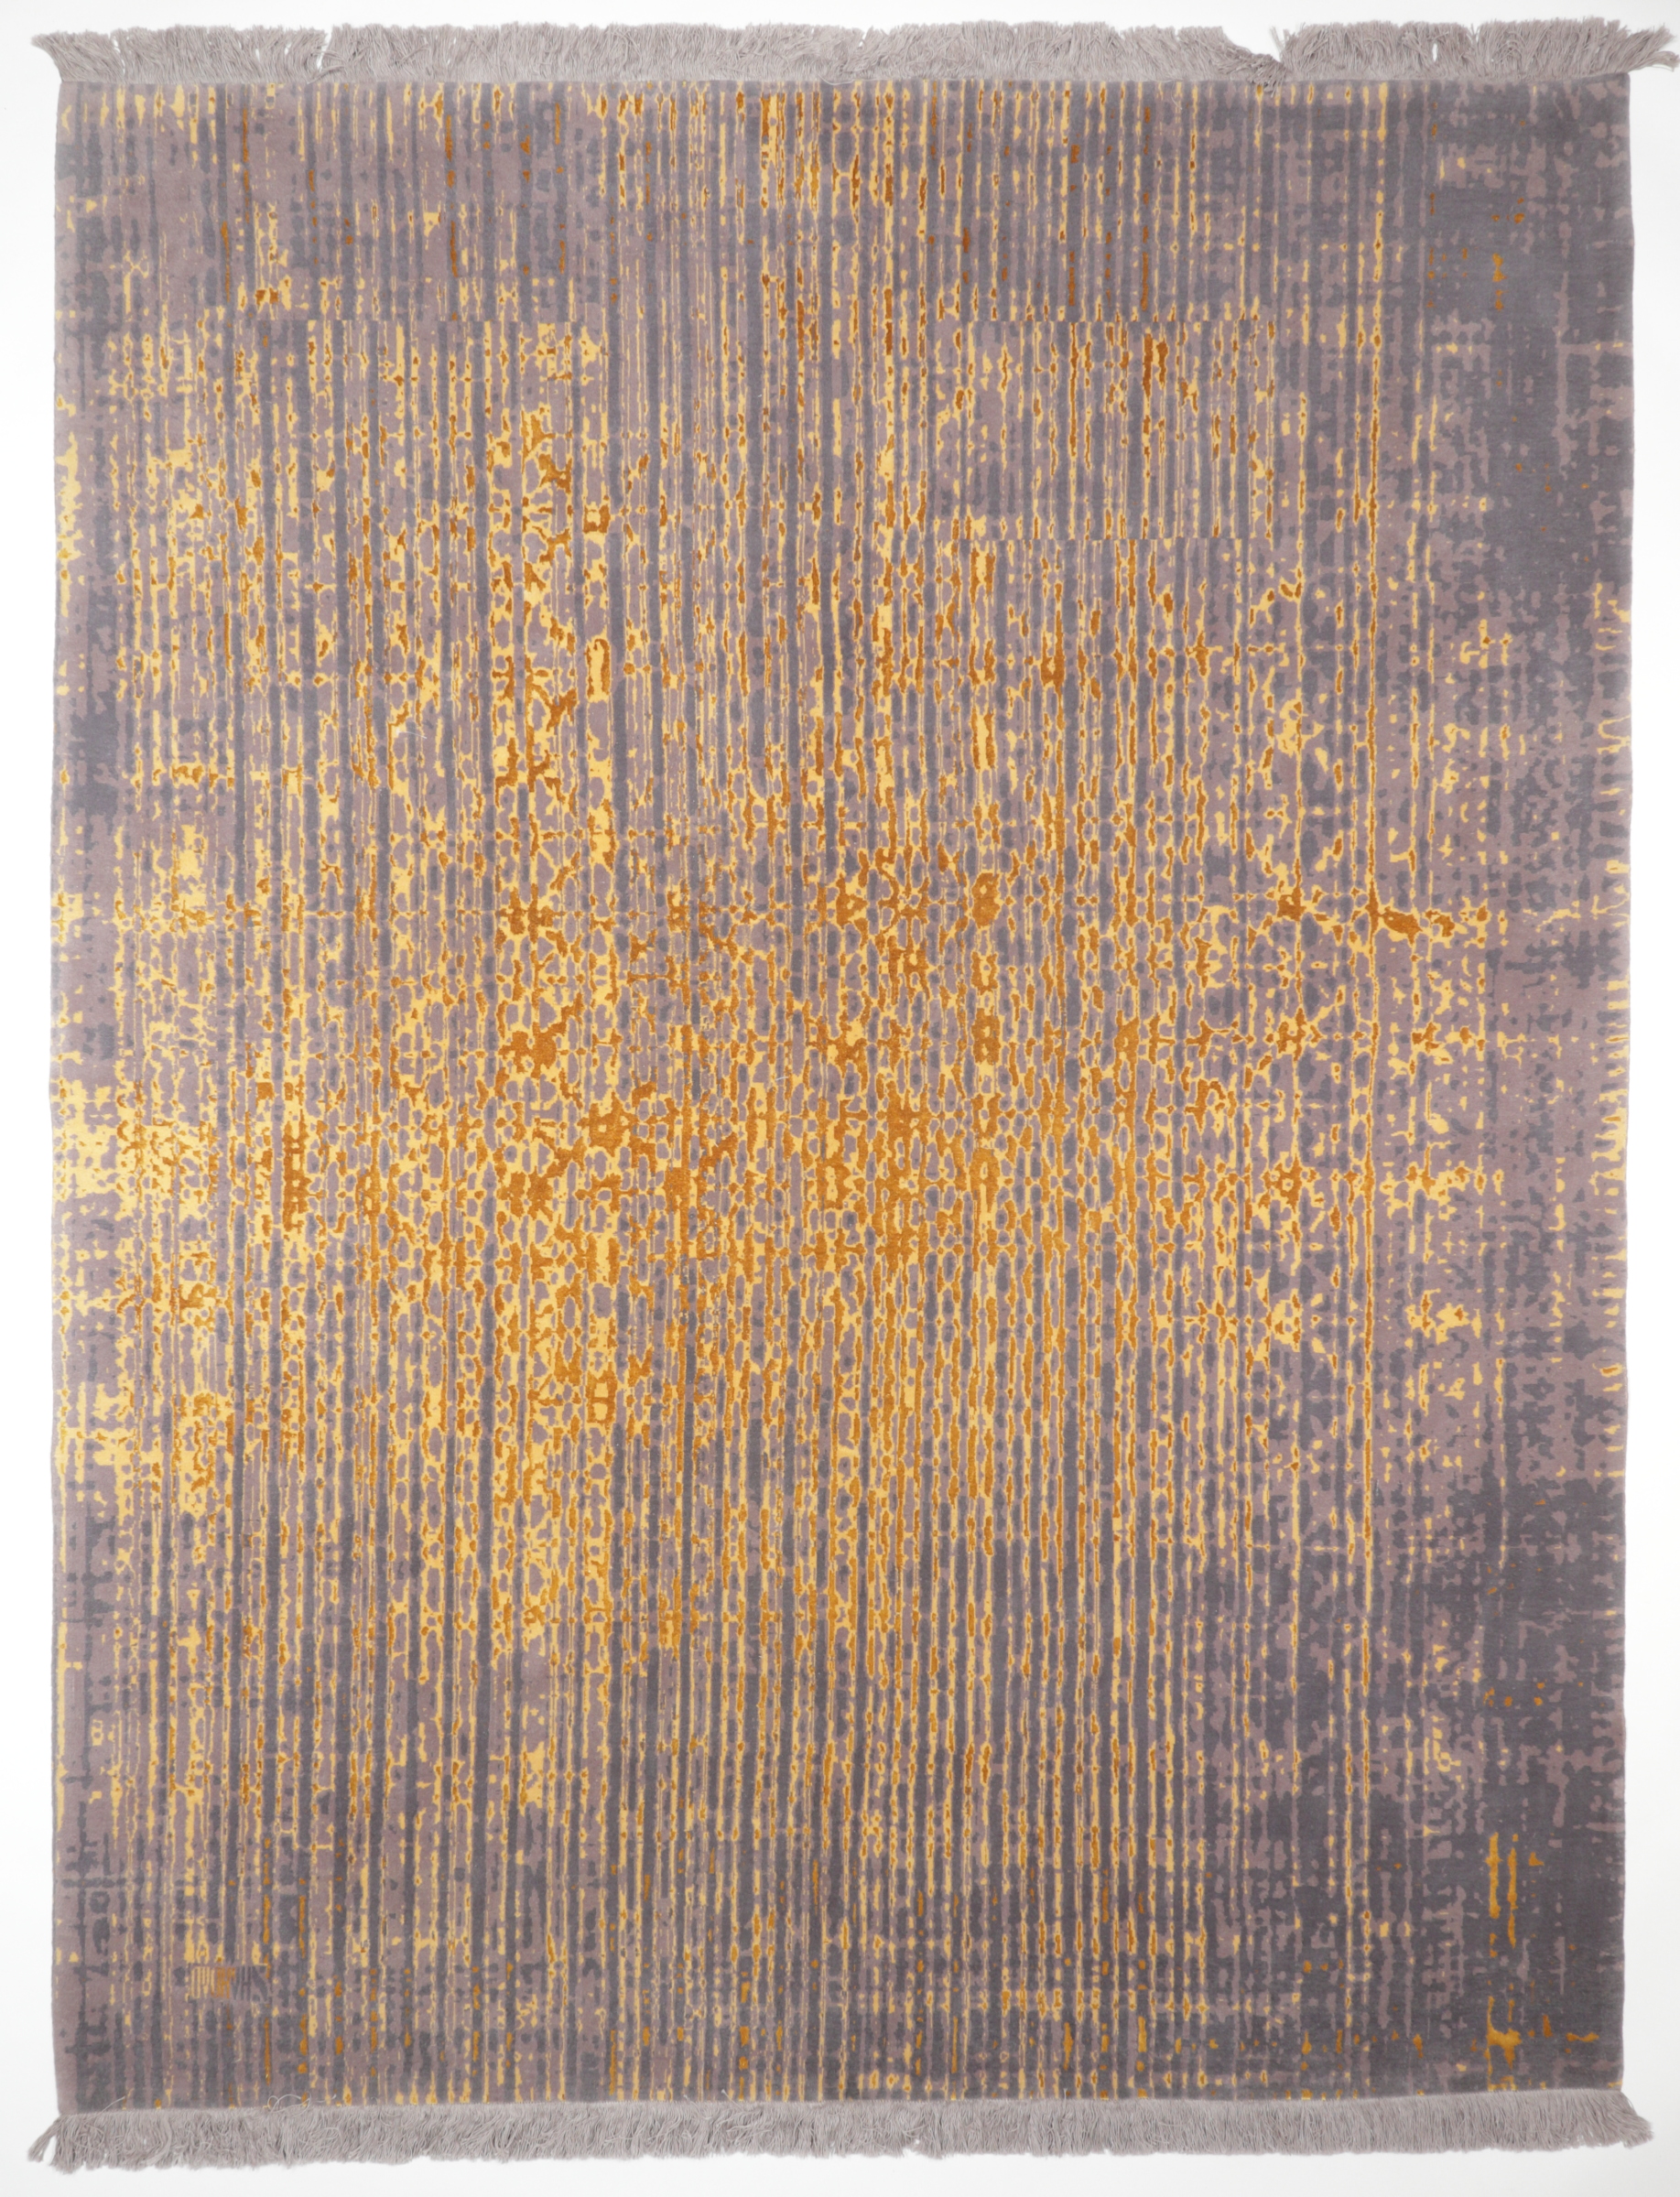 Persischer Designerteppich aus Schurwolle und Seide, handgeknüpft, graugrundig mit goldenem "Rainfall", Draufsicht